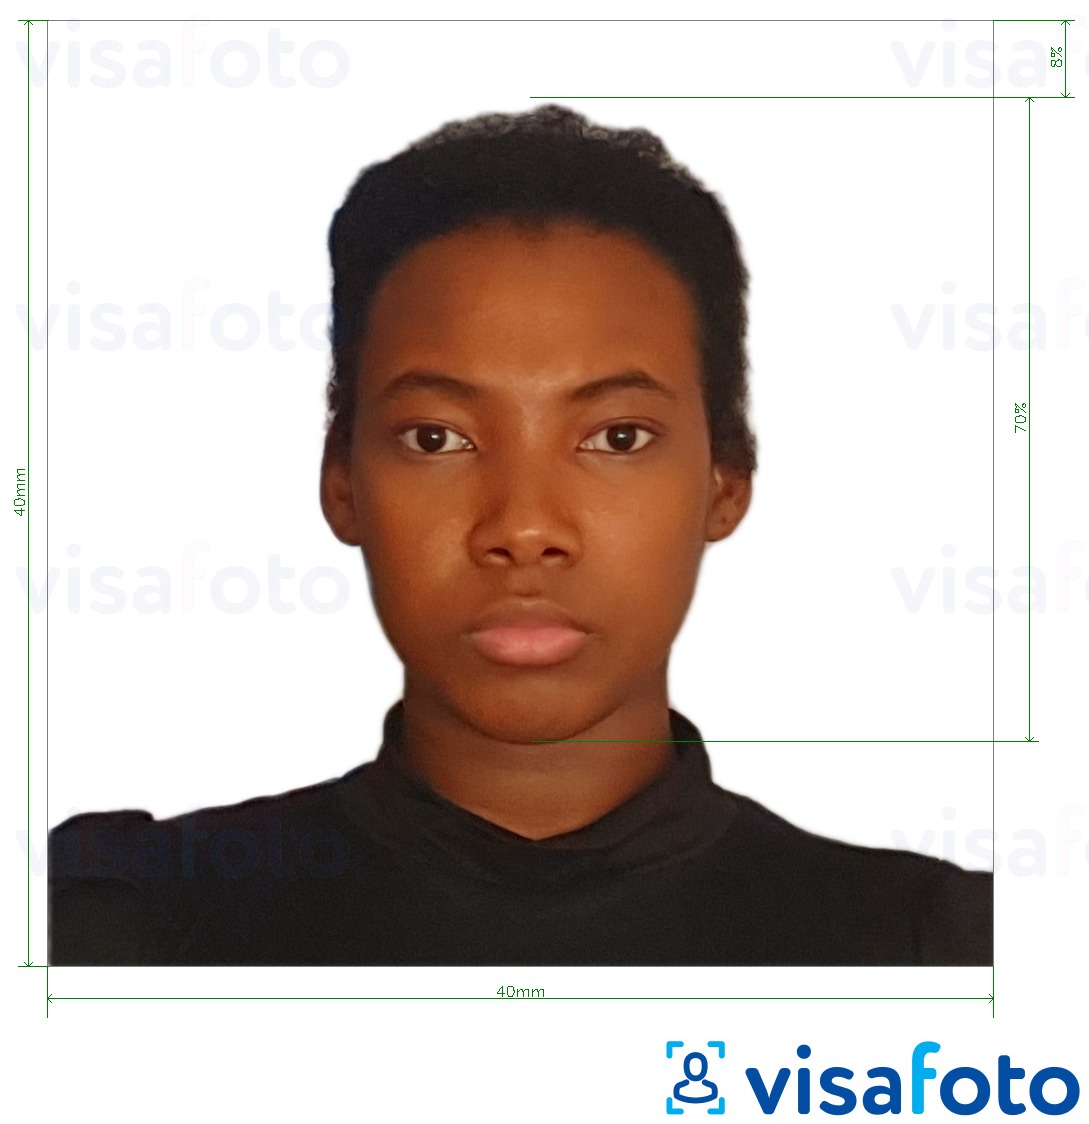 Exemple de foto per a Visa de Madagascar 40x40 mm amb la mida exacta especificada